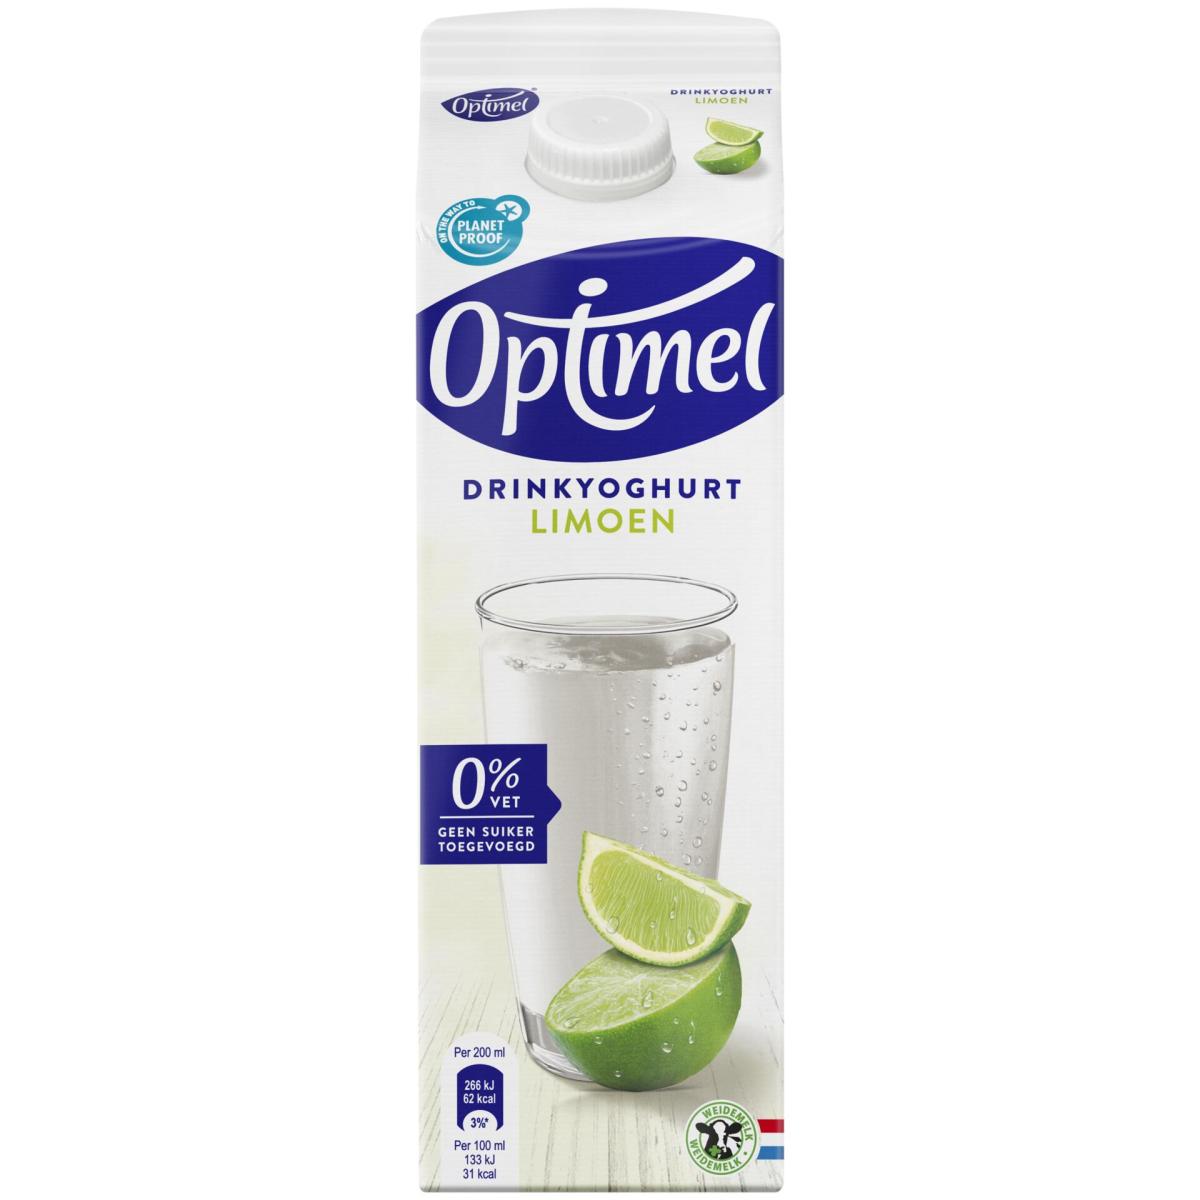 Optimel Drinkyoghurt limoen 0% vet 1L